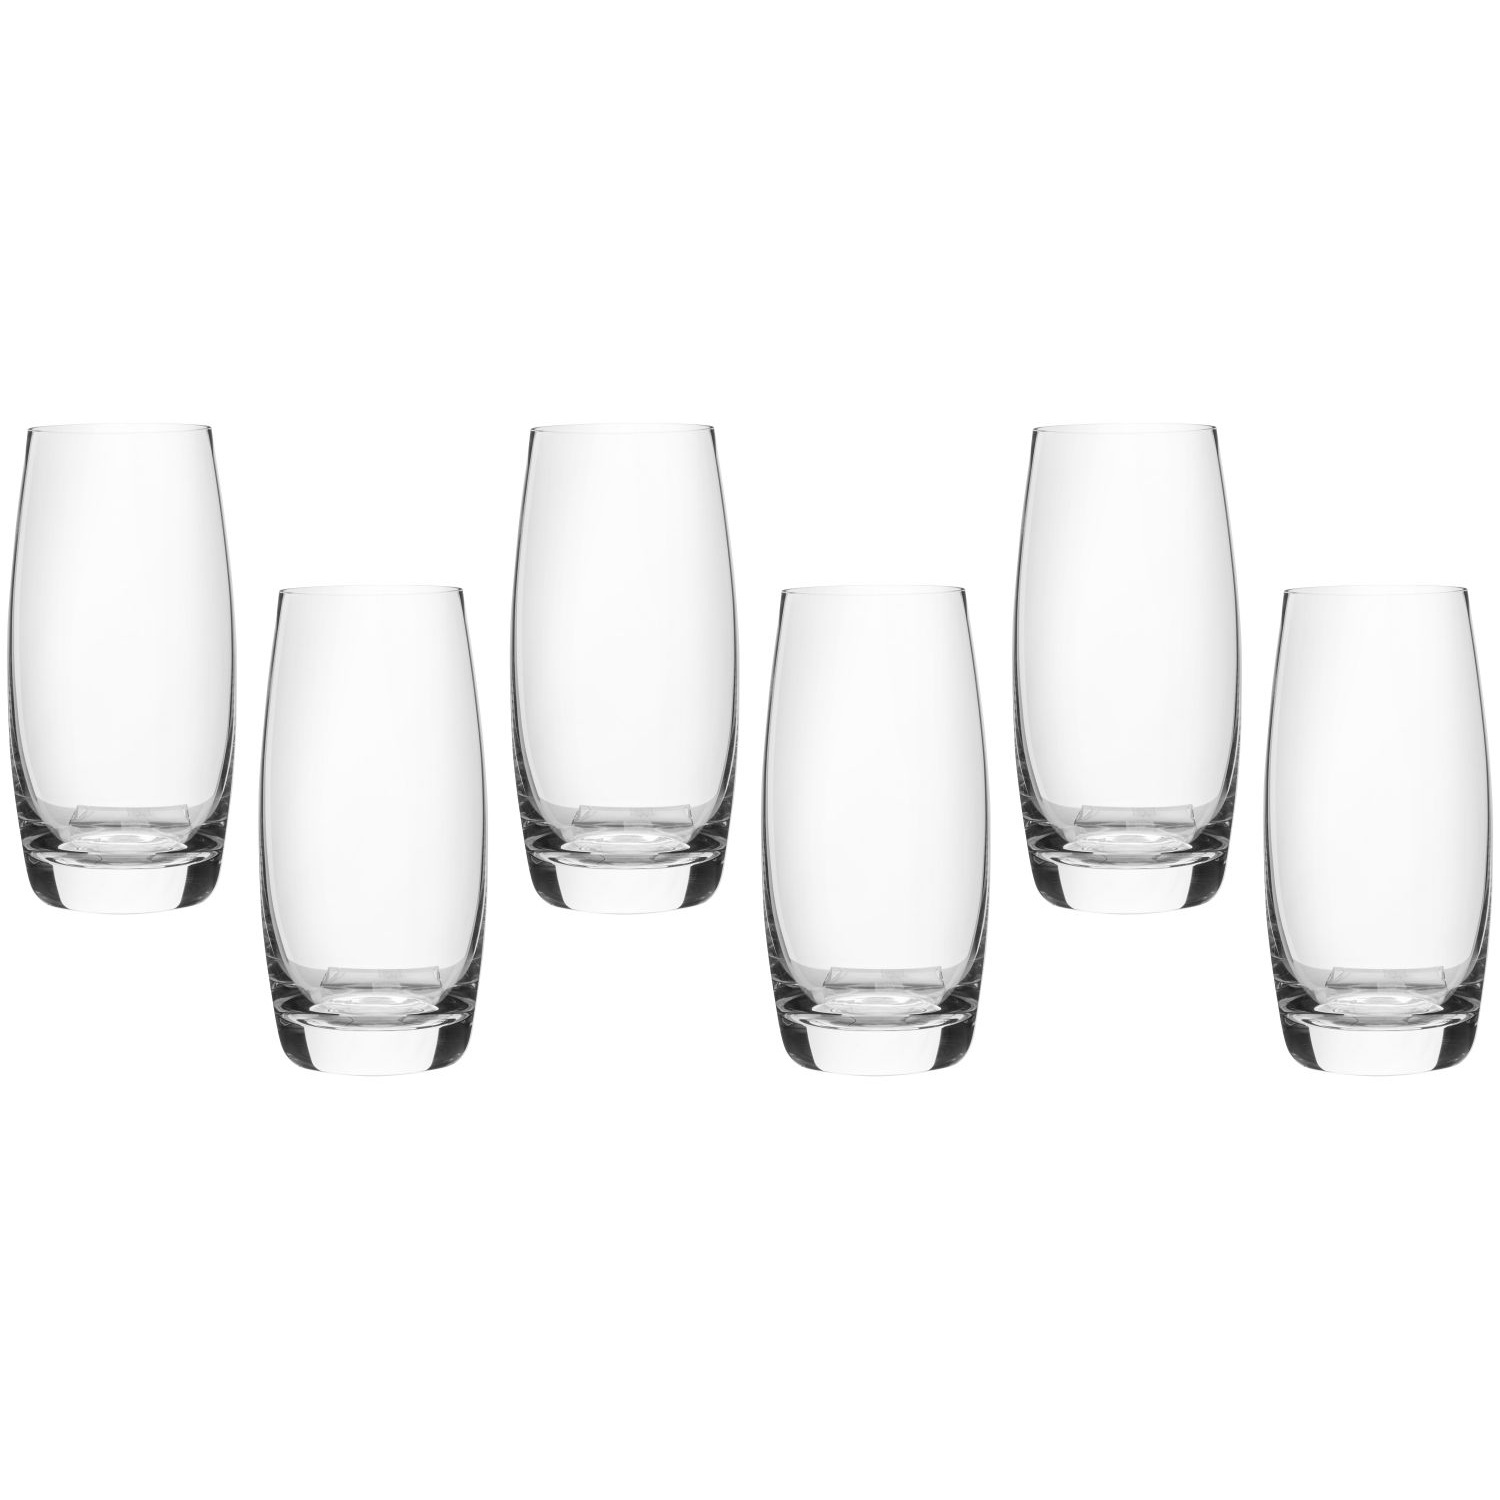 Набор стаканов Maxwell & Williams Cosmopolitan для воды 0,4 л sublime бокалы для воды 4 шт